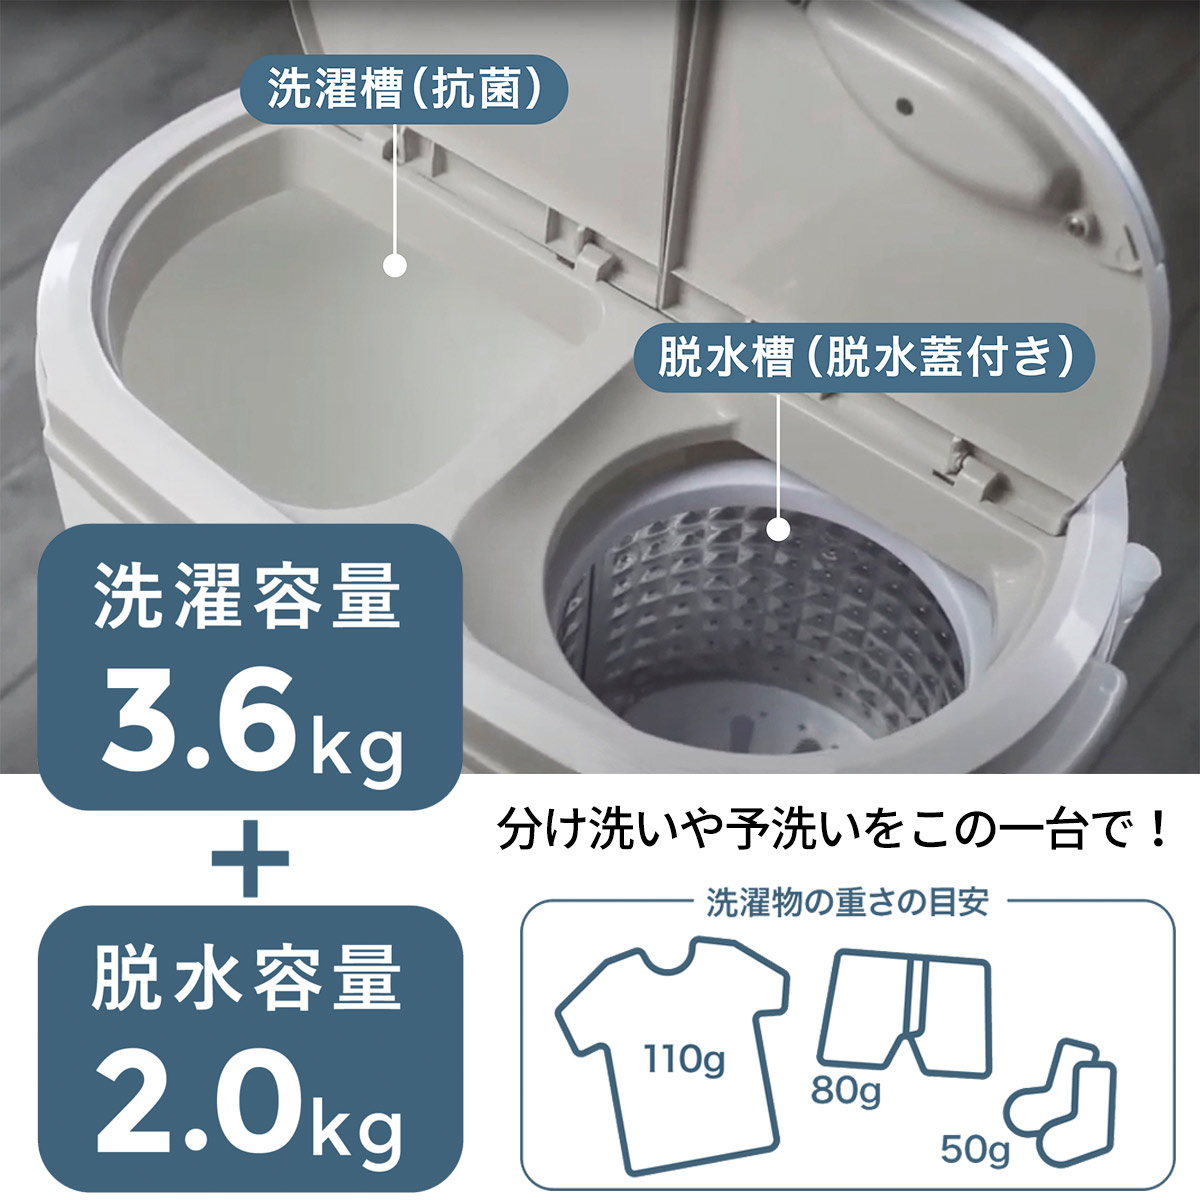 【楽天市場】小型洗濯機 ウォッシュマン TOM-05w 抗菌 脱水 ミニ